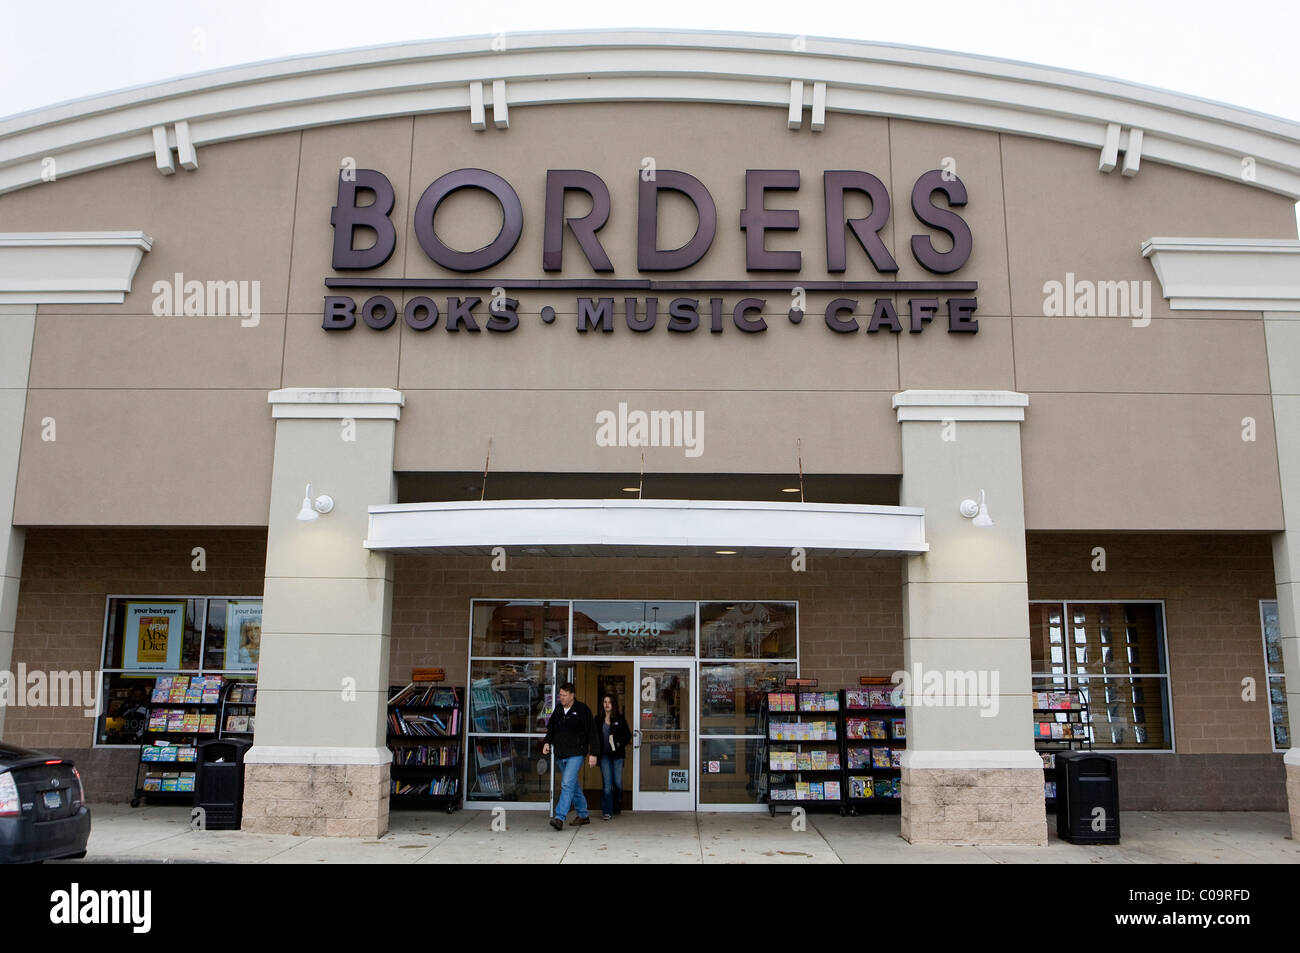 Una delle frontiere bookstore. Foto Stock